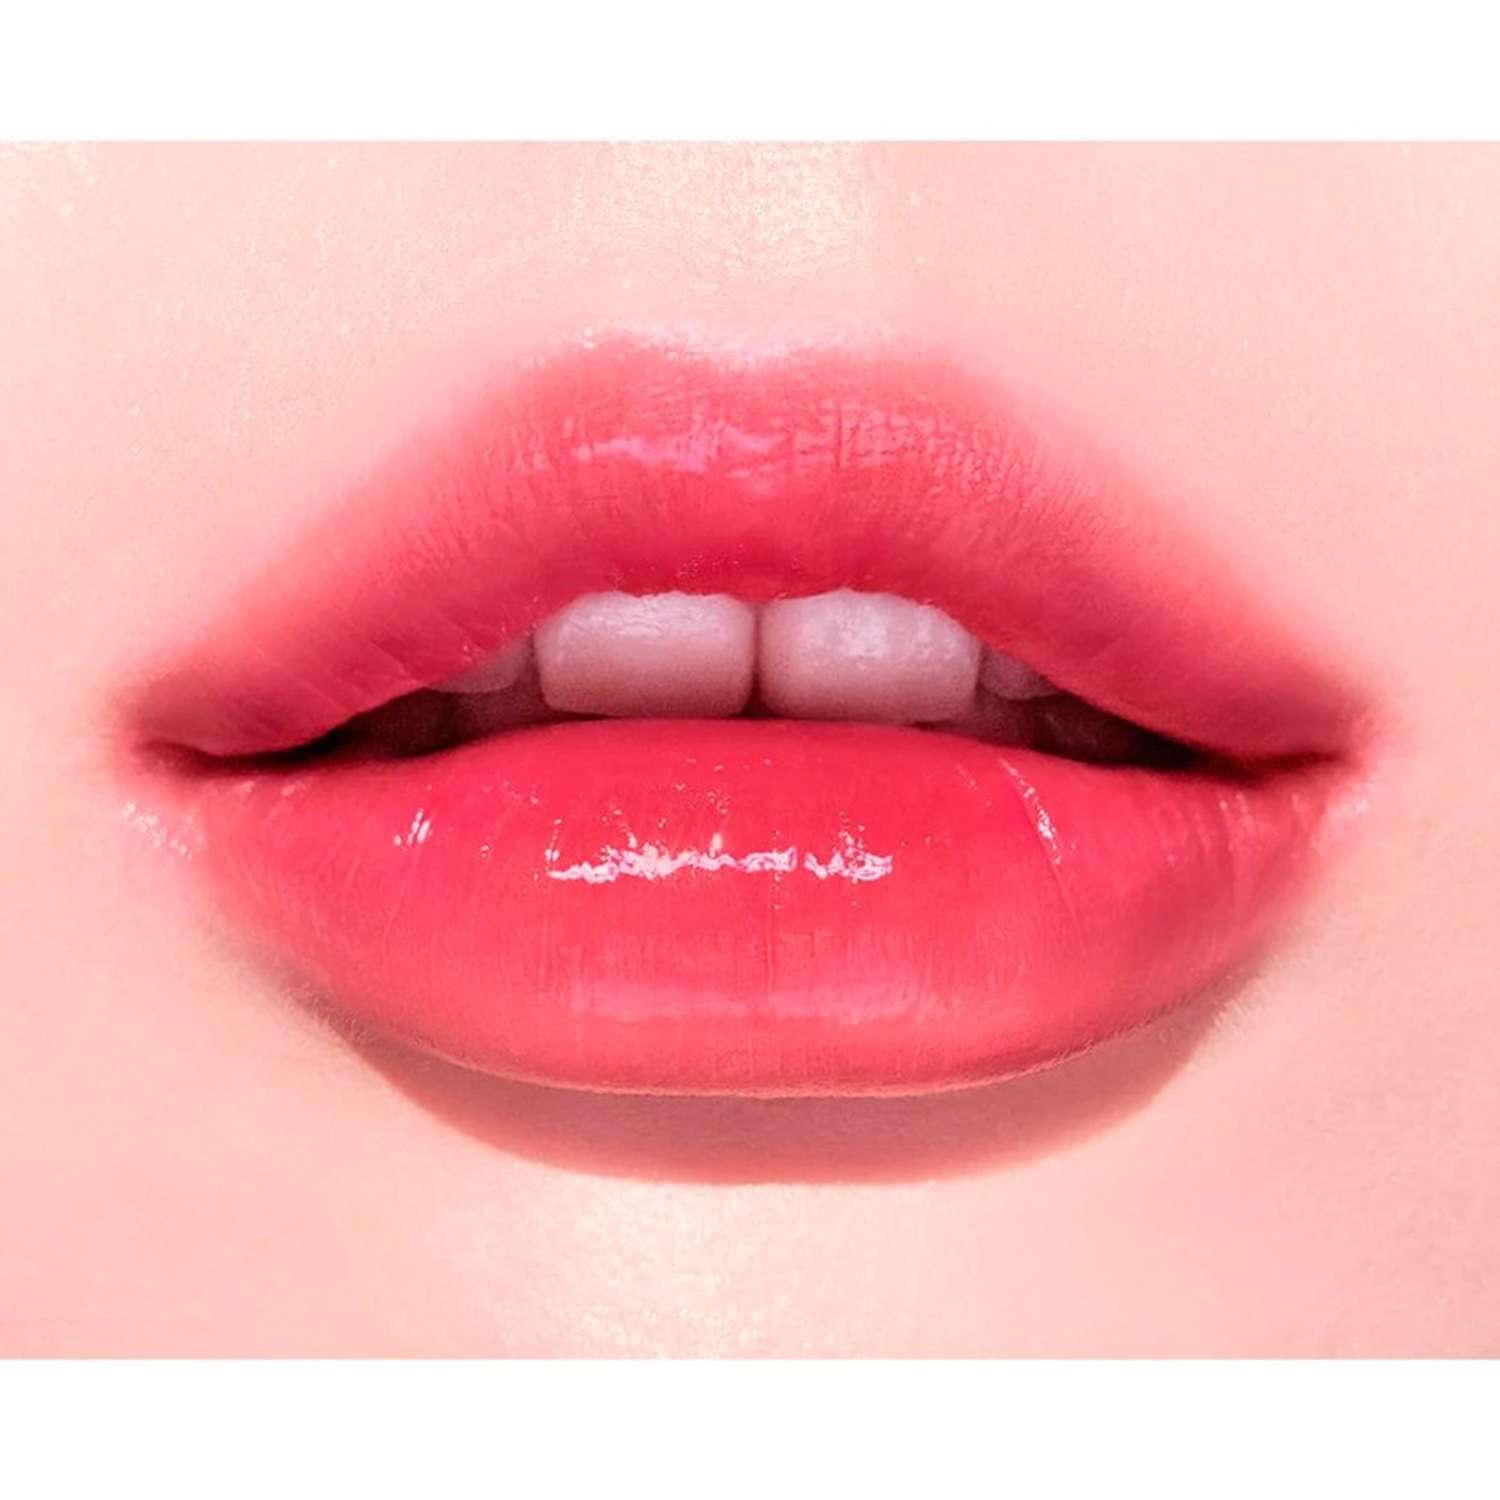 Тинт для губ Peripera Ink mood glowy tint жидкий тон 05 cherry so what - фото 4